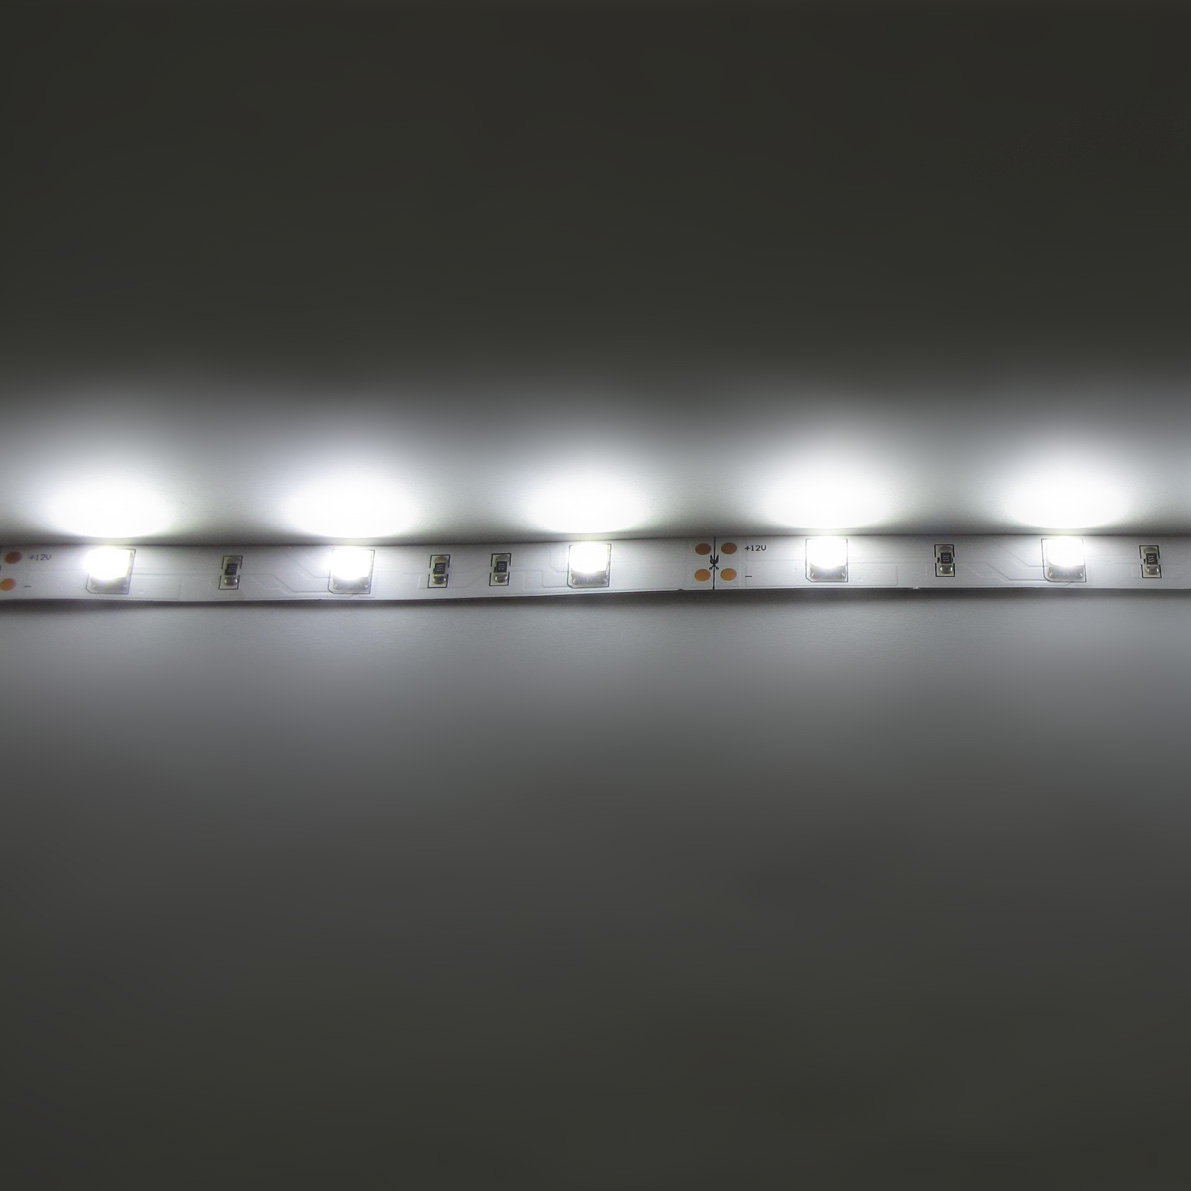 светодиодная лента standart pro class, 5050, 30 led/m, white, 12v, ip33, артикул 28133